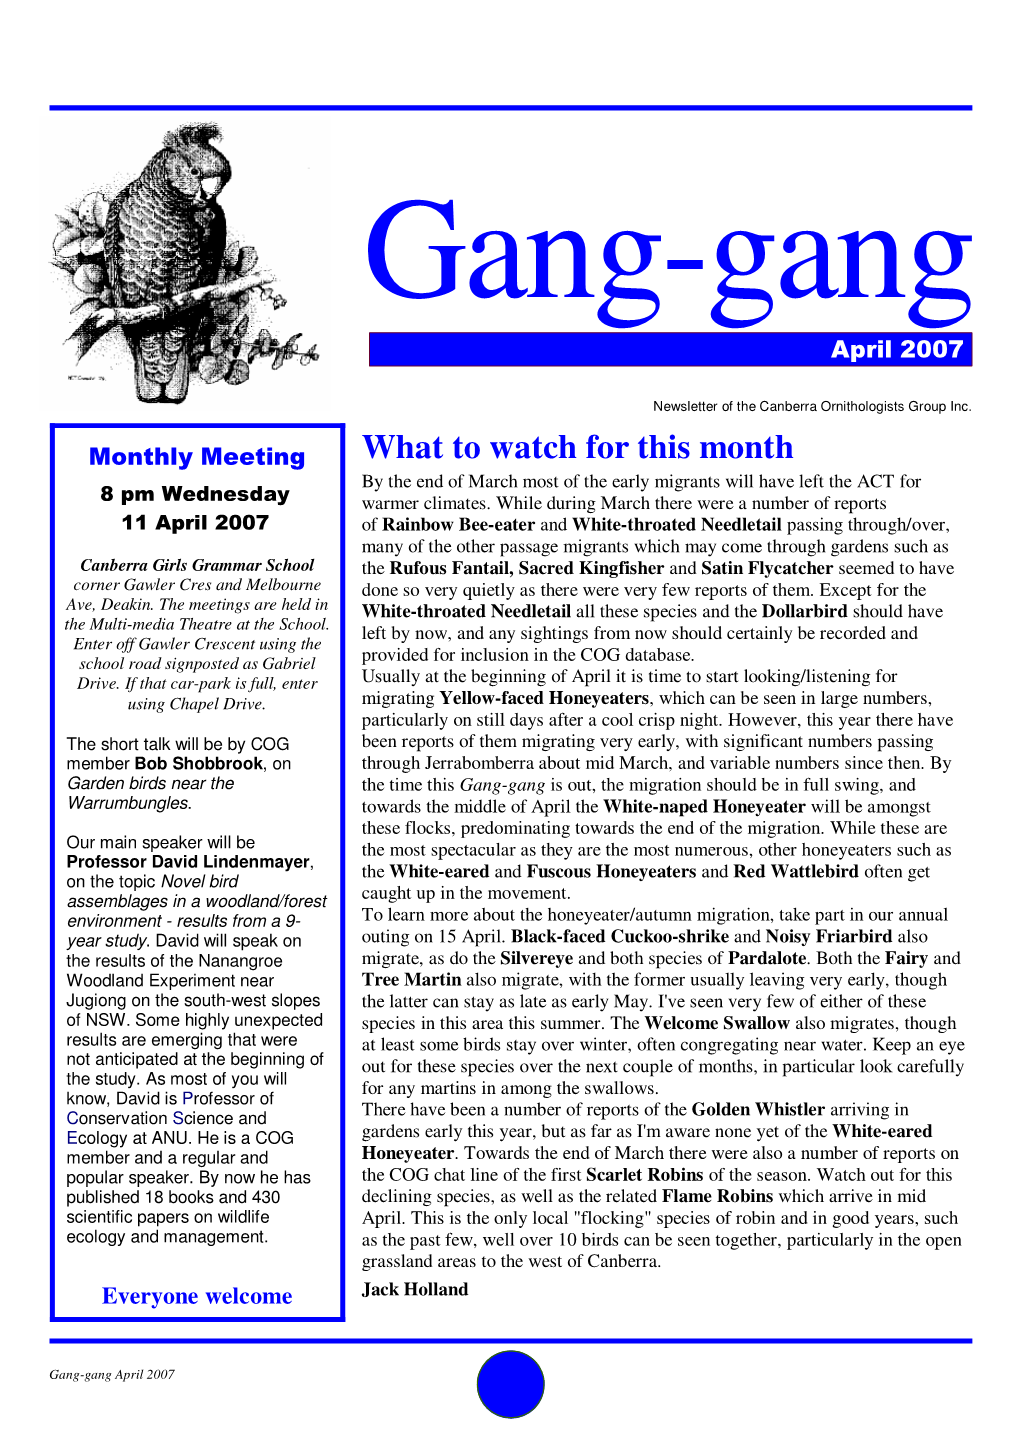 Gang-Gang April 2007.Pub